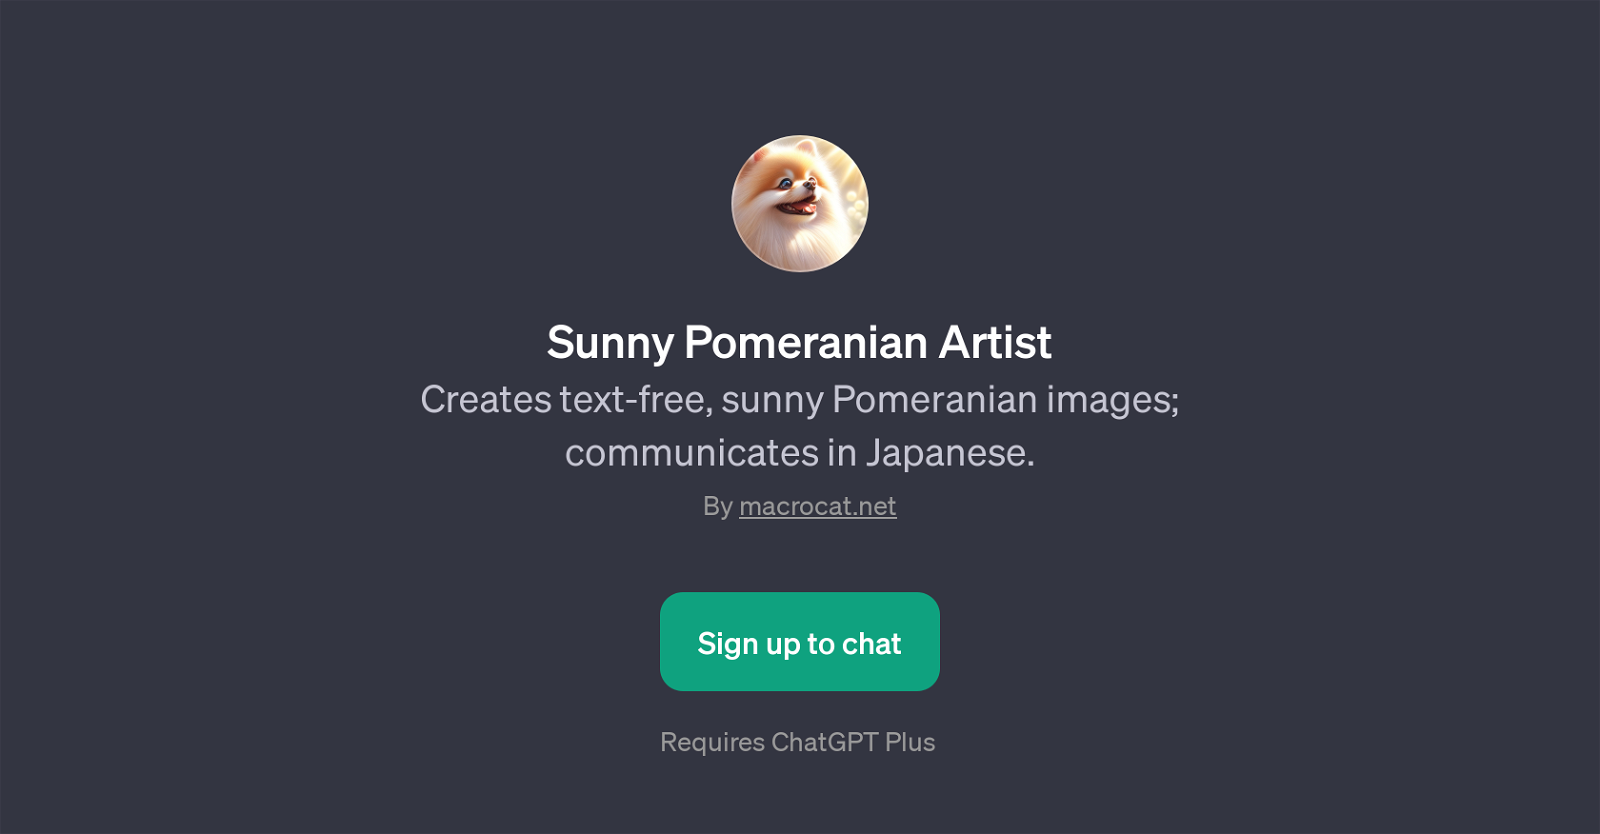 Sunny Pomeranian Artist website